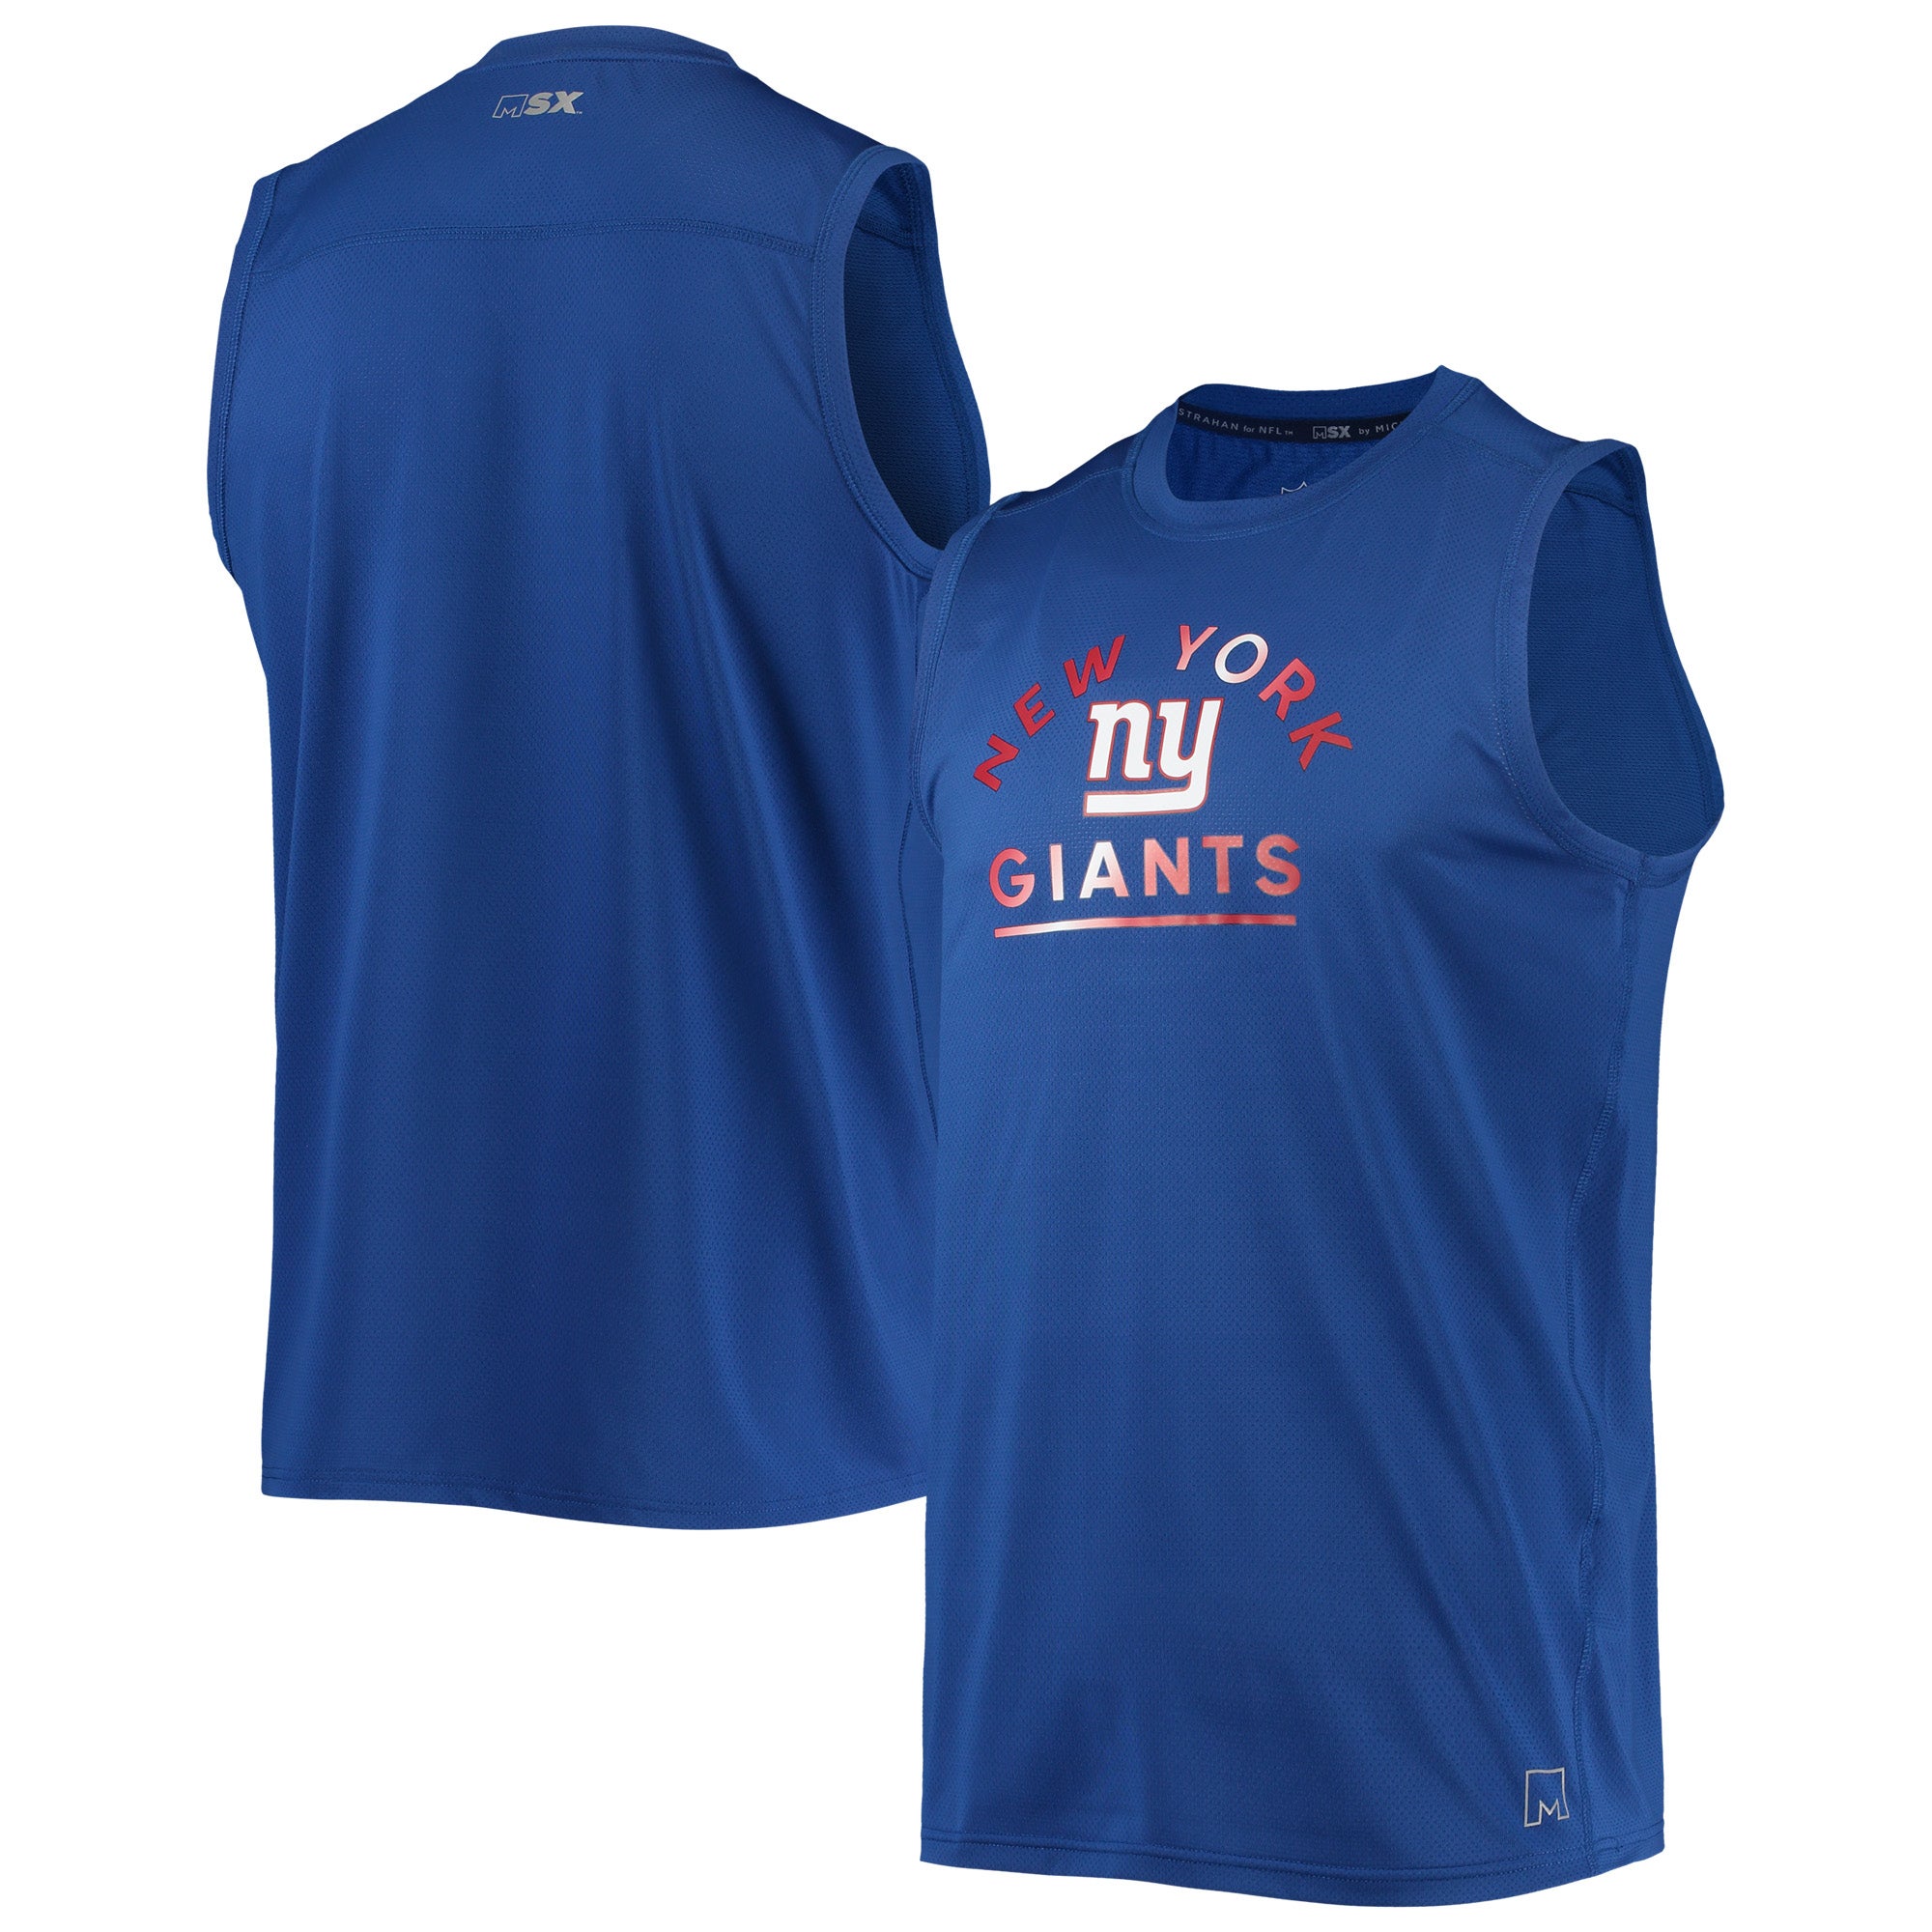 ny giants sleeveless shirt